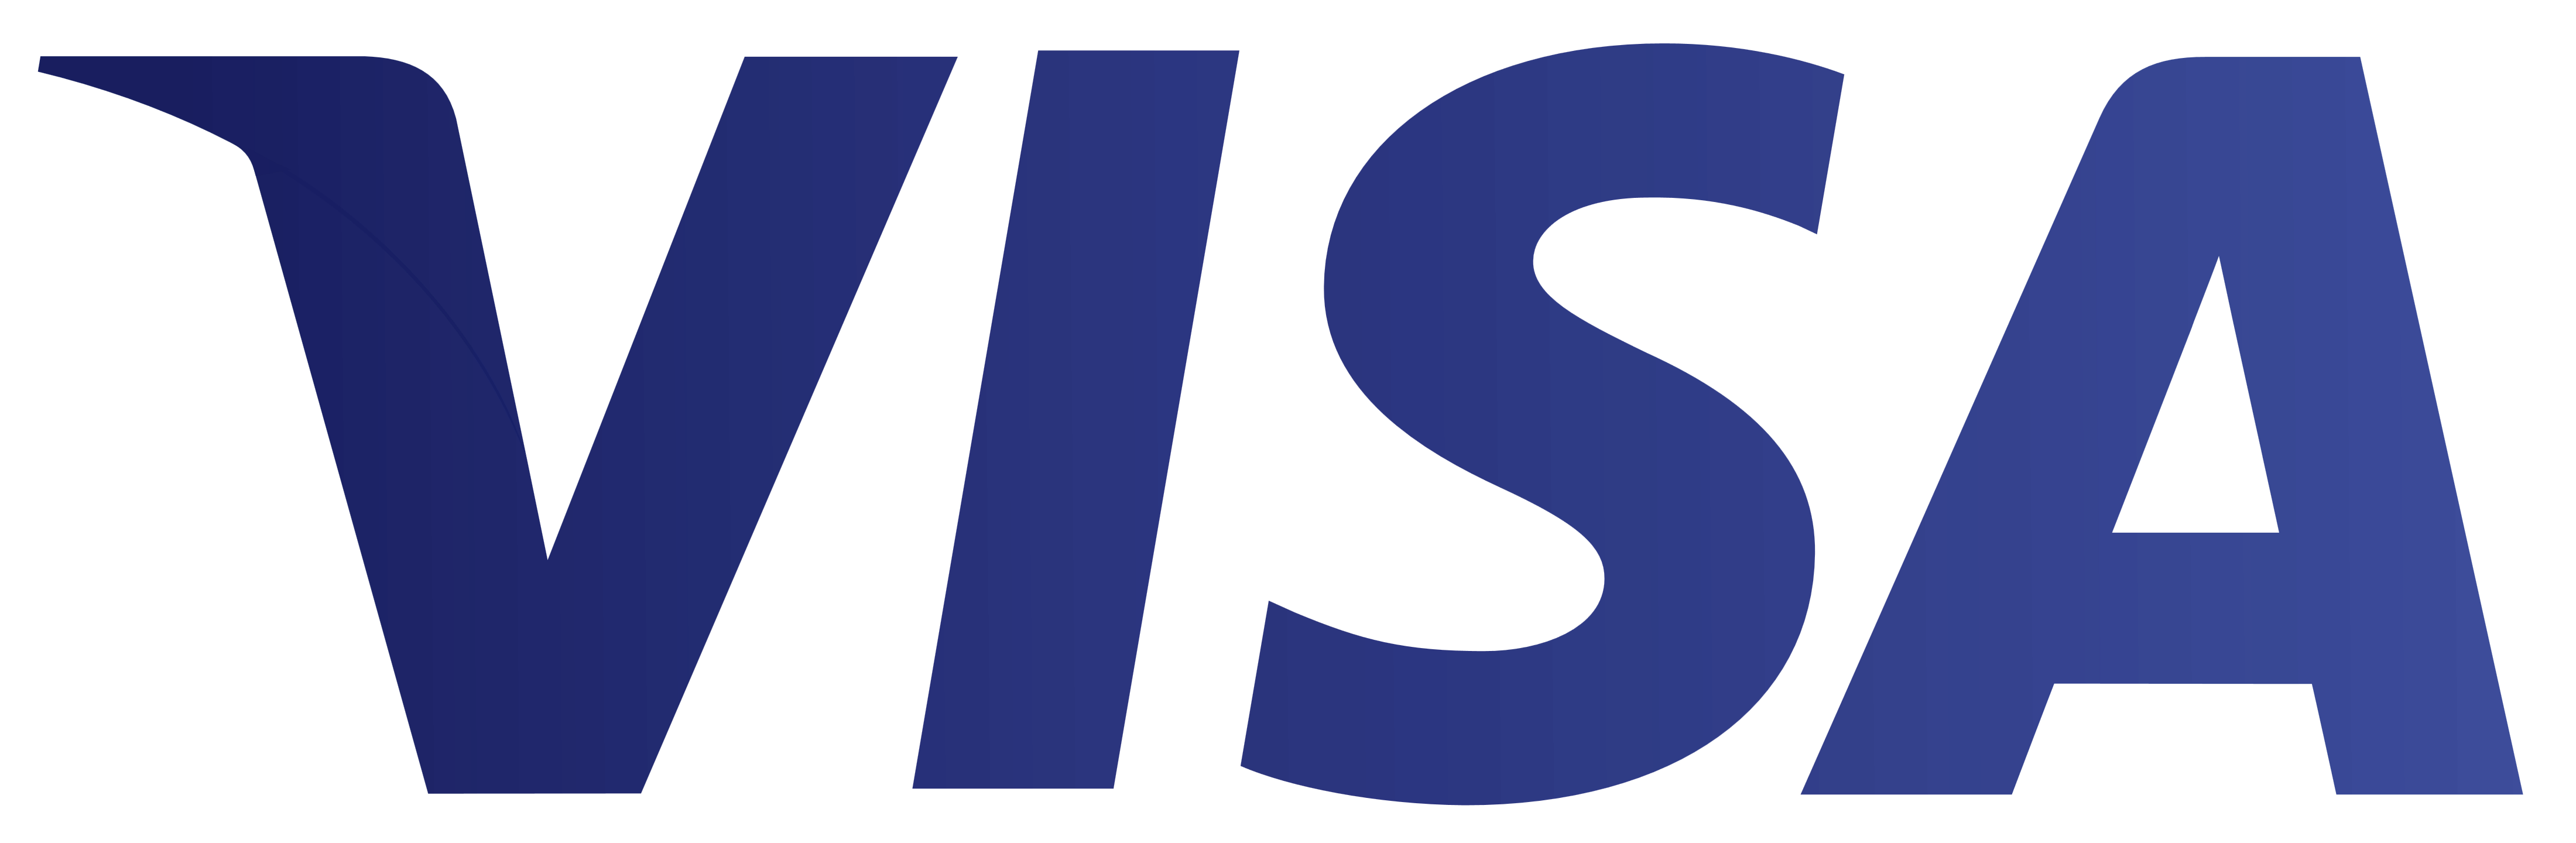 Visa-Logo.